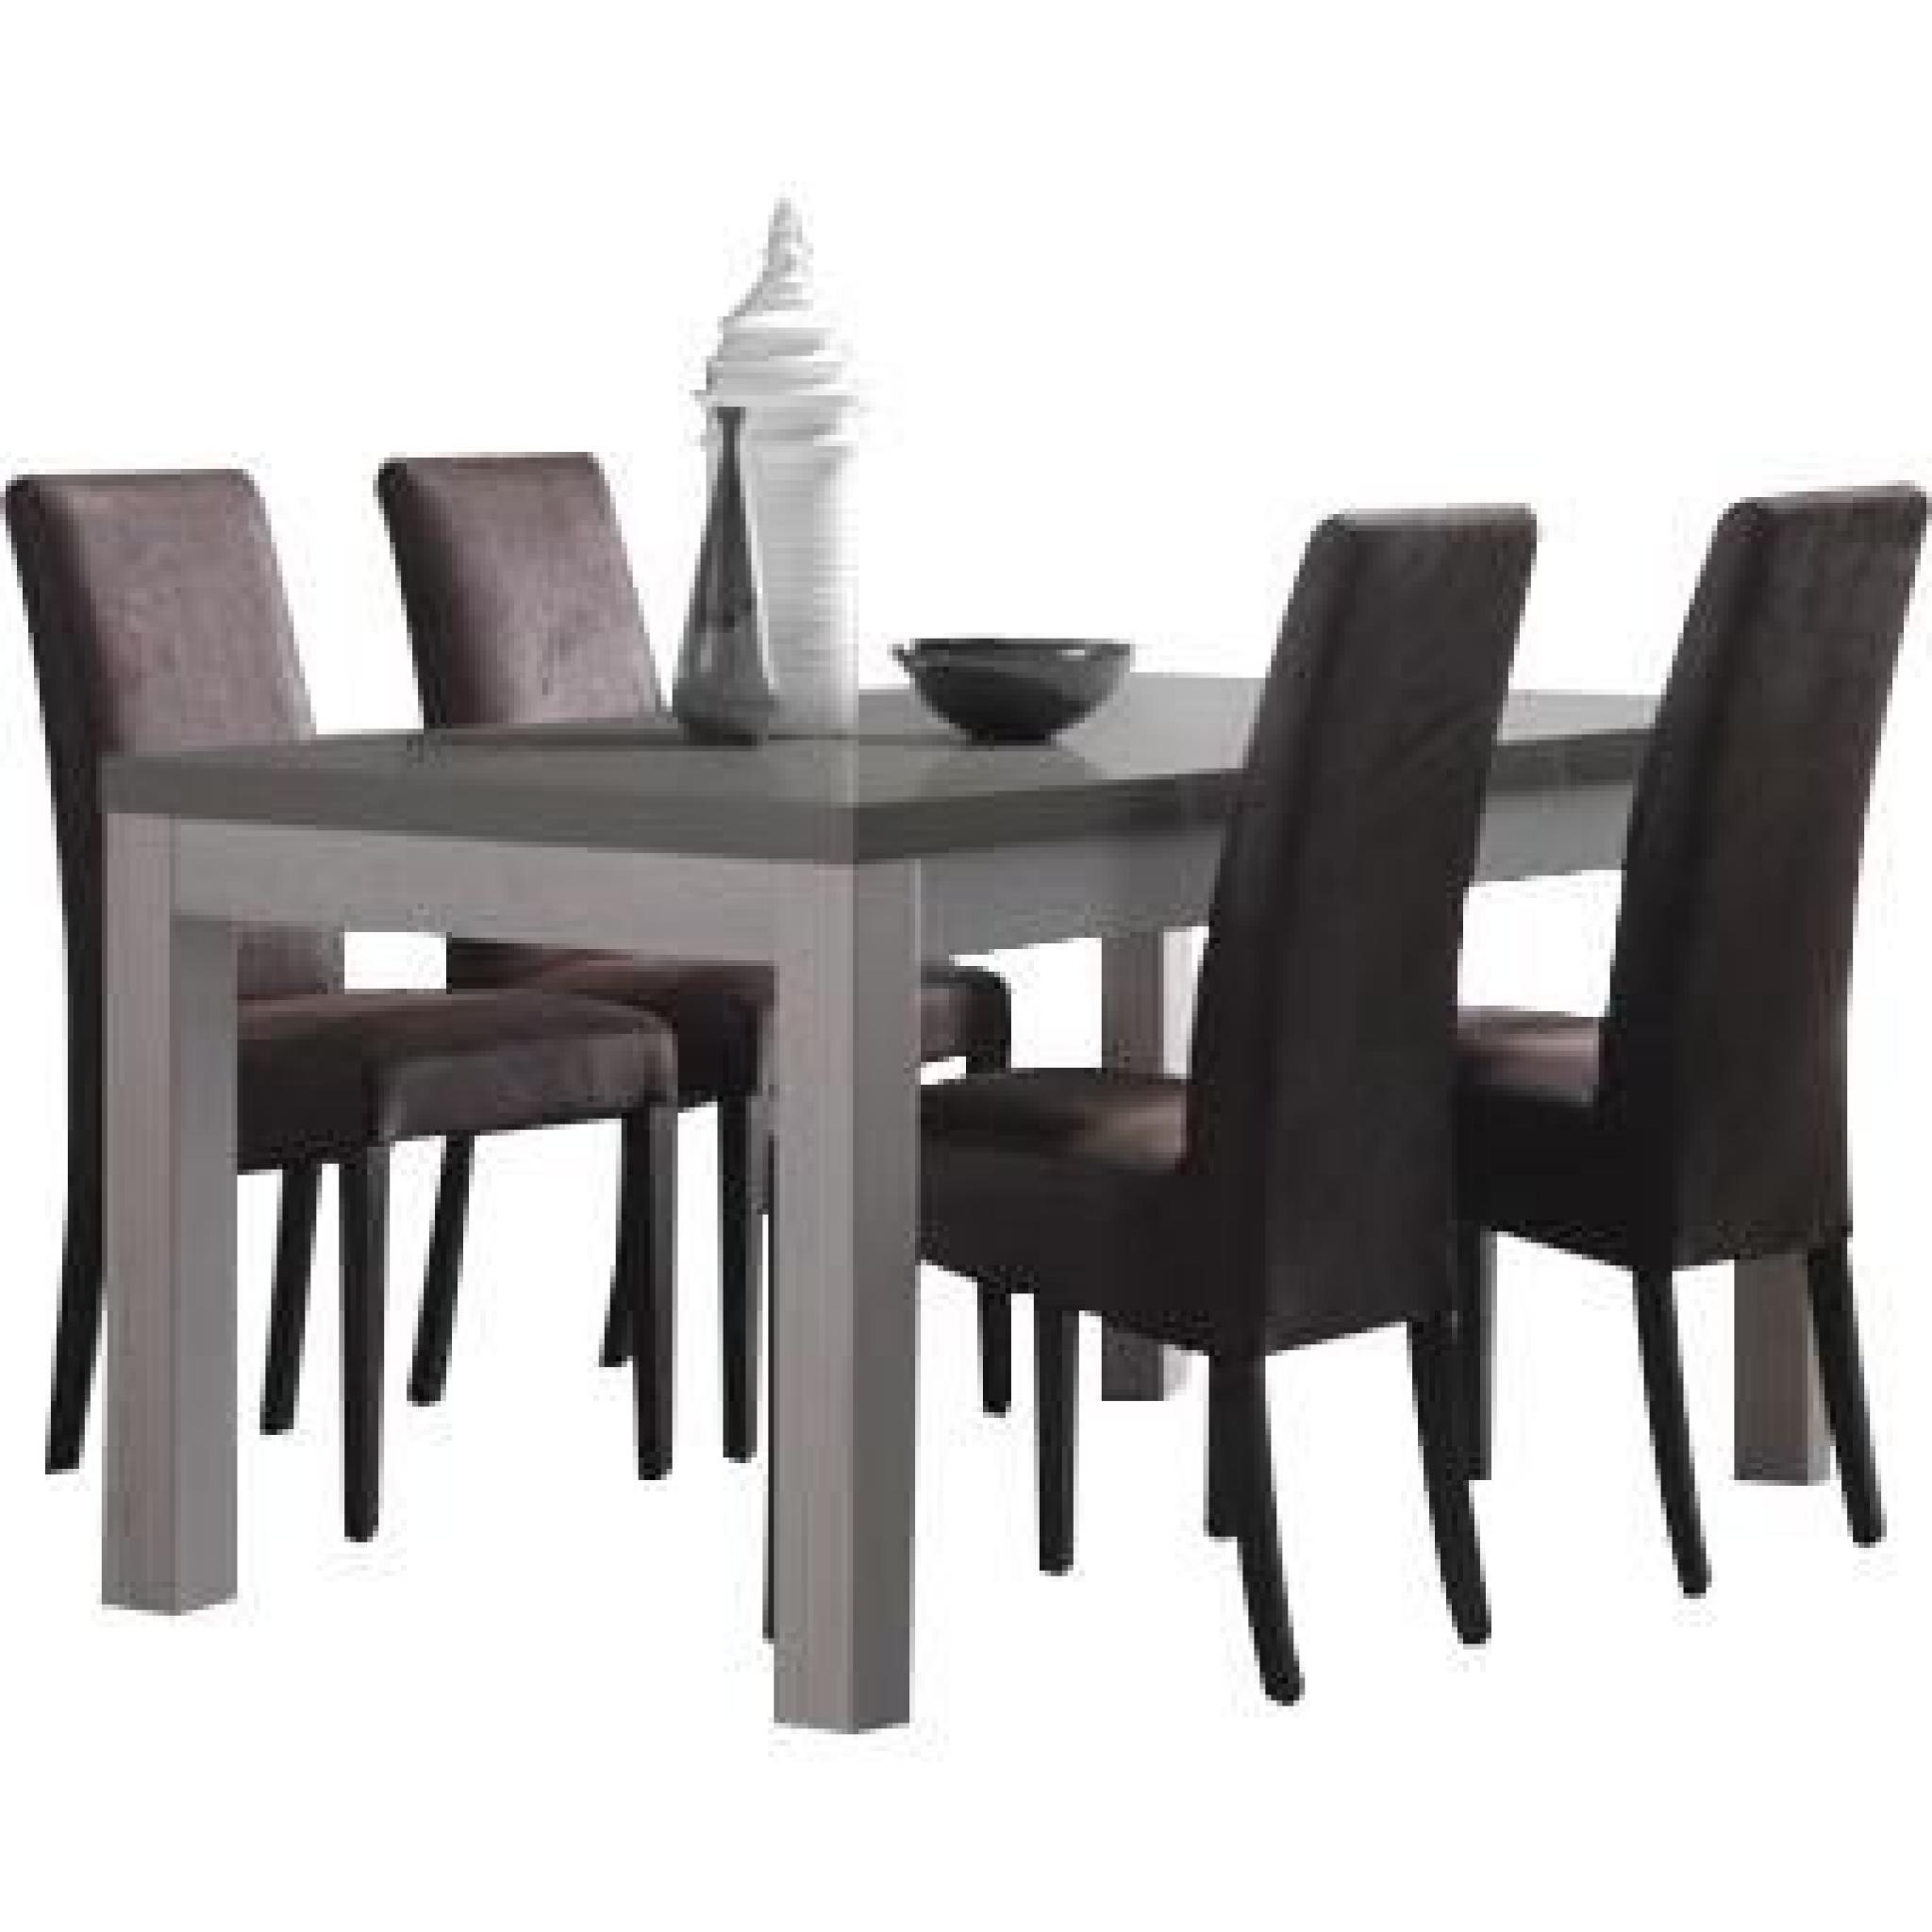 Table en bois et gris laqué 190 cm + 4 chaises en tissu brun foncé